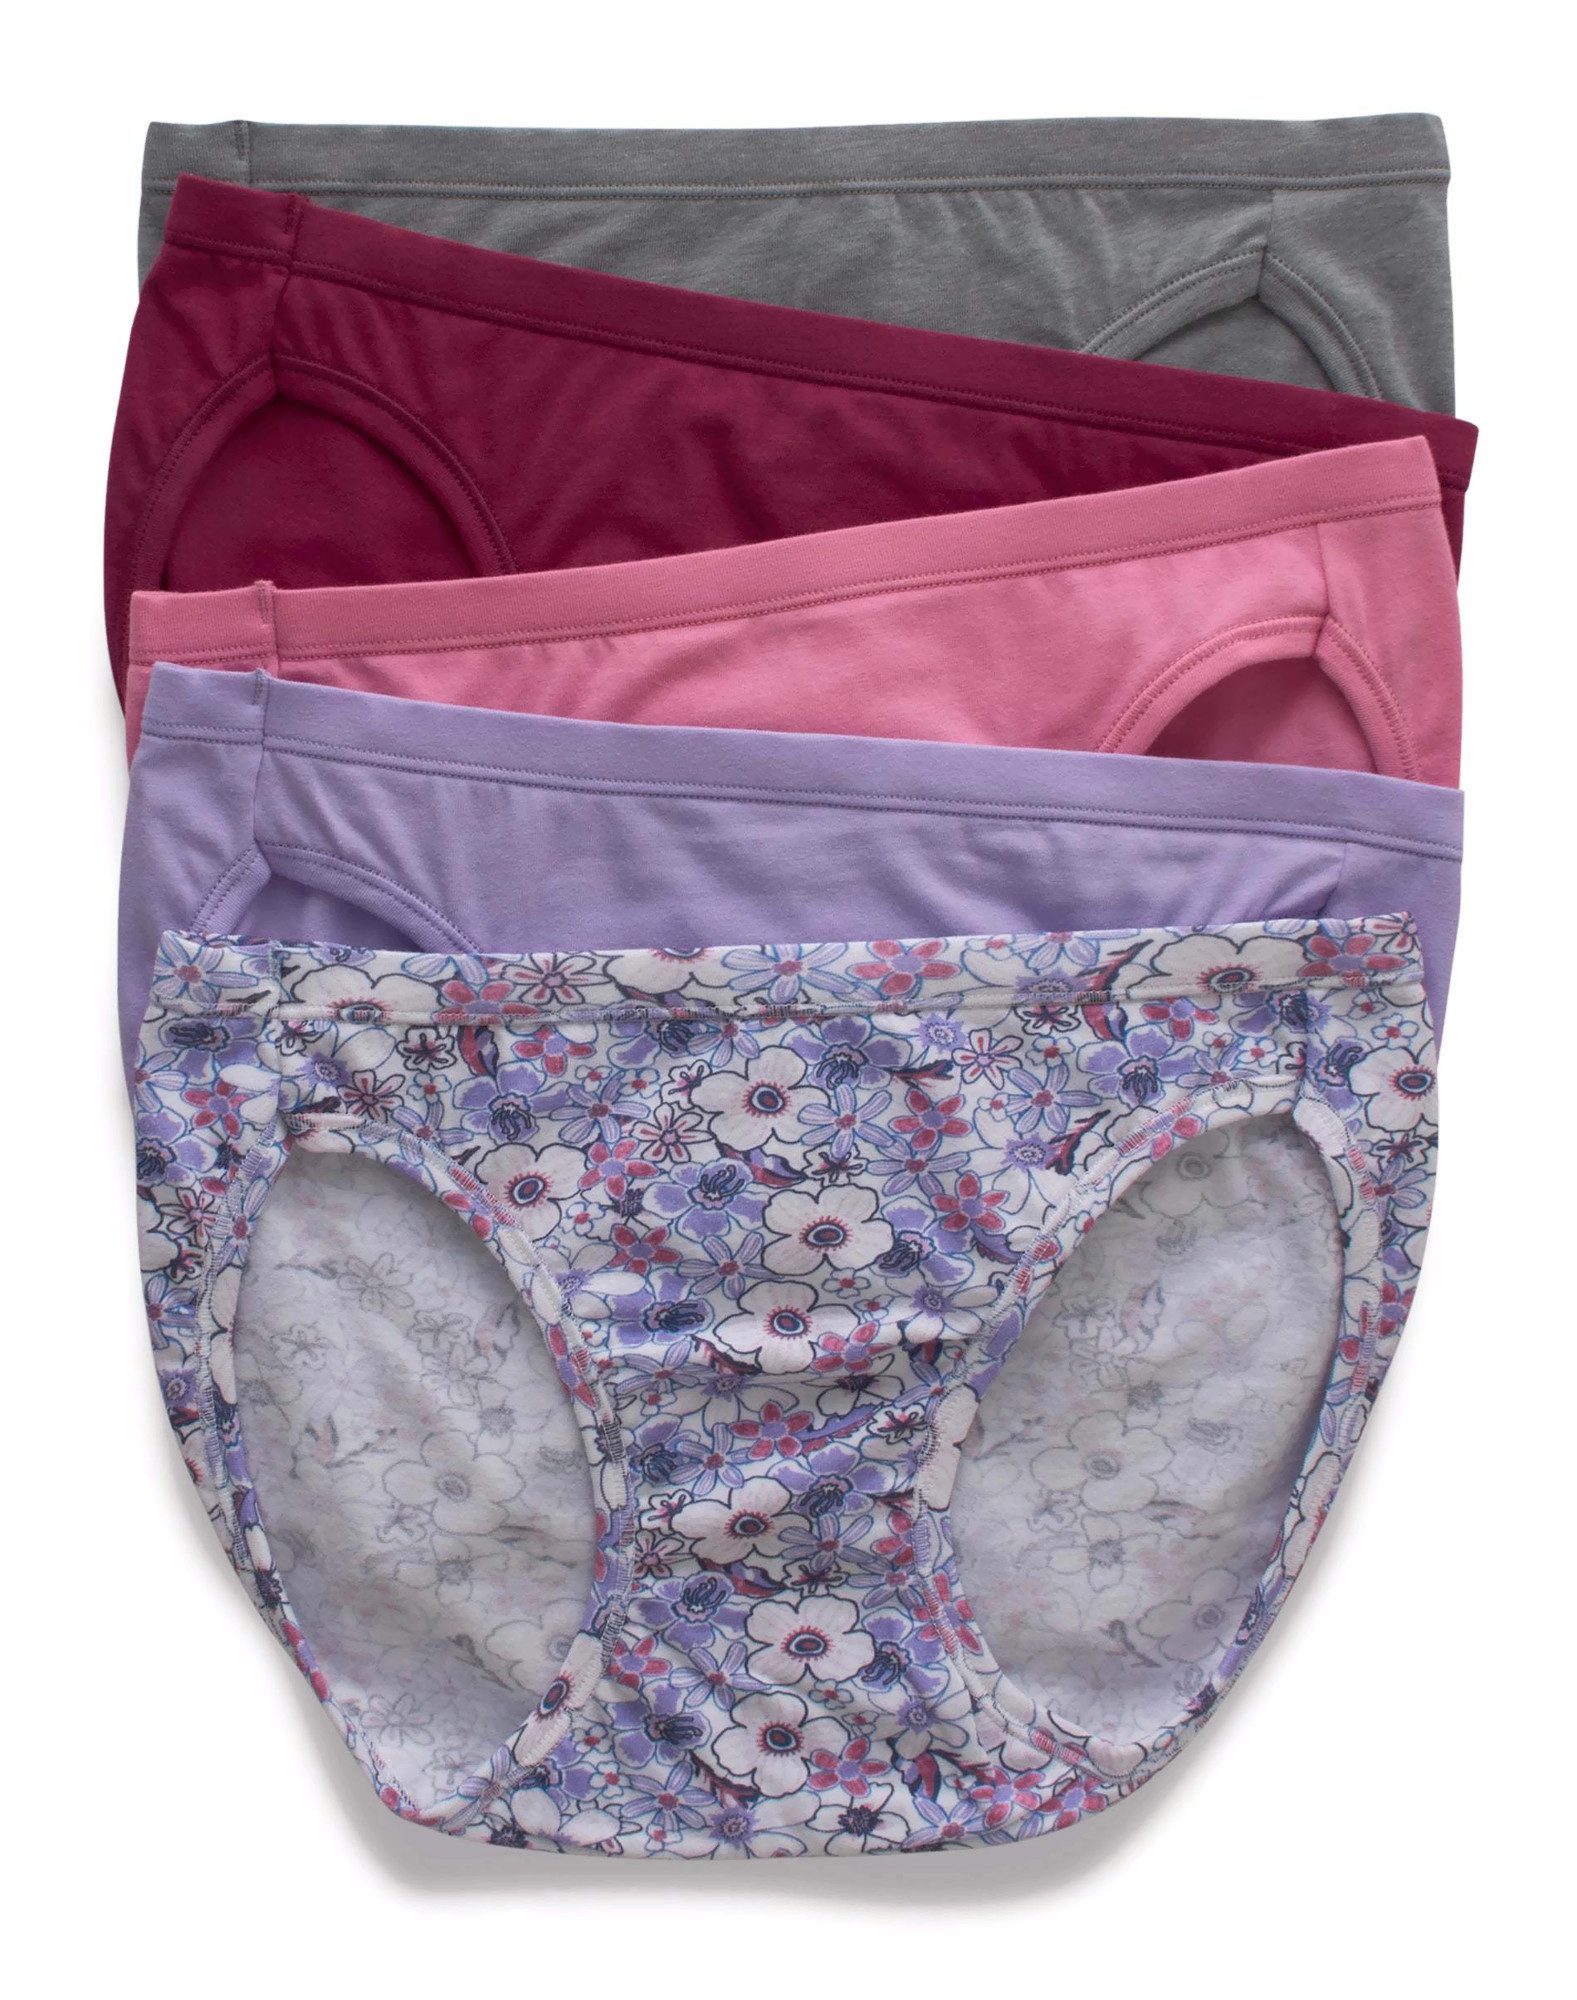 Hanes Ultimate Girls' Cotton Stretch Brief Underwear, 5-Pack